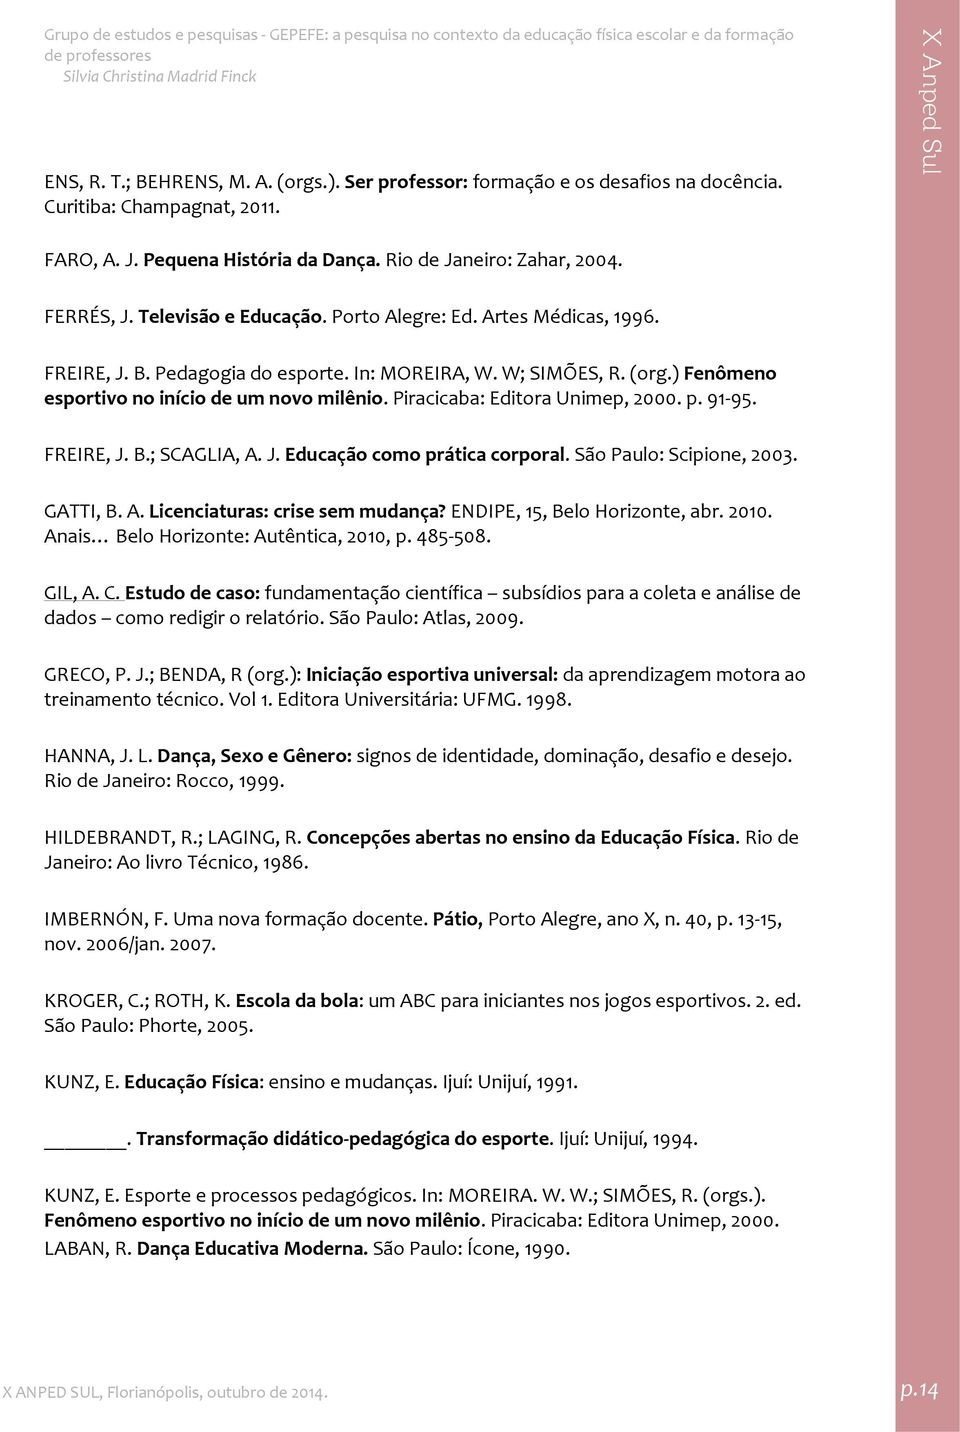 Piracicaba: Editora Unimep, 2000. p. 91 95. FREIRE, J. B.; SCAGLIA, A. J. Educação como prática corporal. São Paulo: Scipione, 2003. GATTI, B. A. Licenciaturas: crise sem mudança?